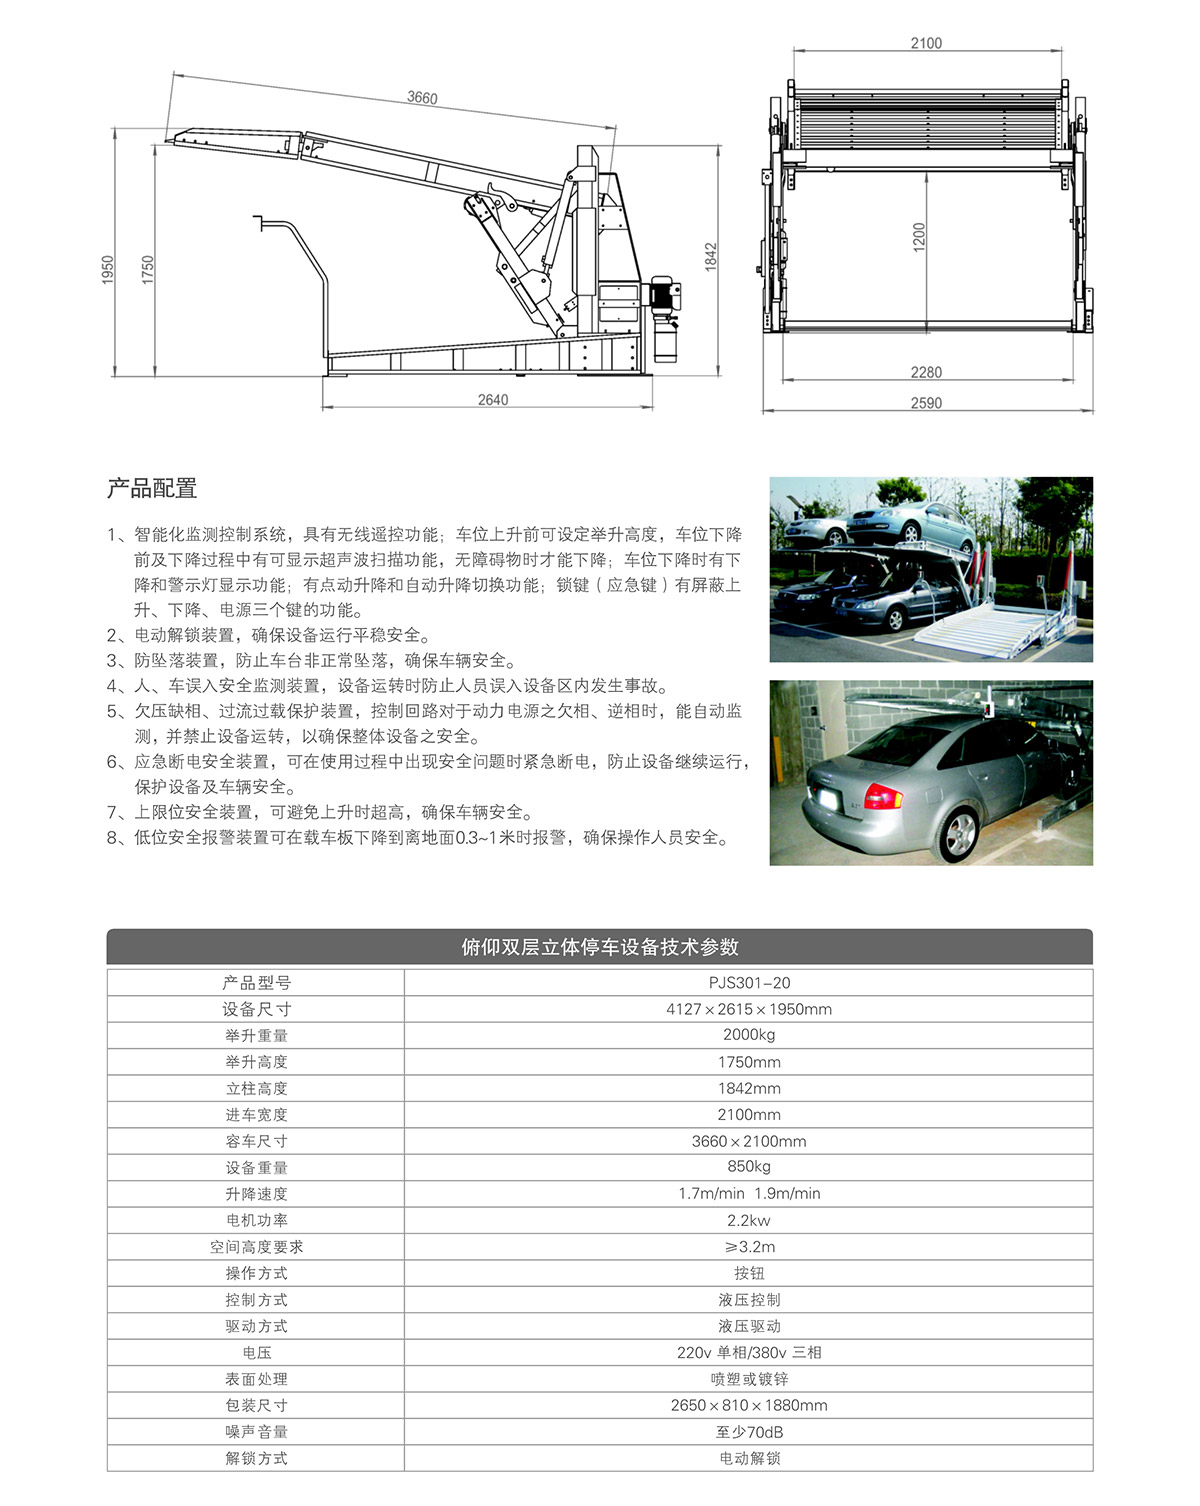 重庆俯仰双层停车设备租赁技术参数.jpg